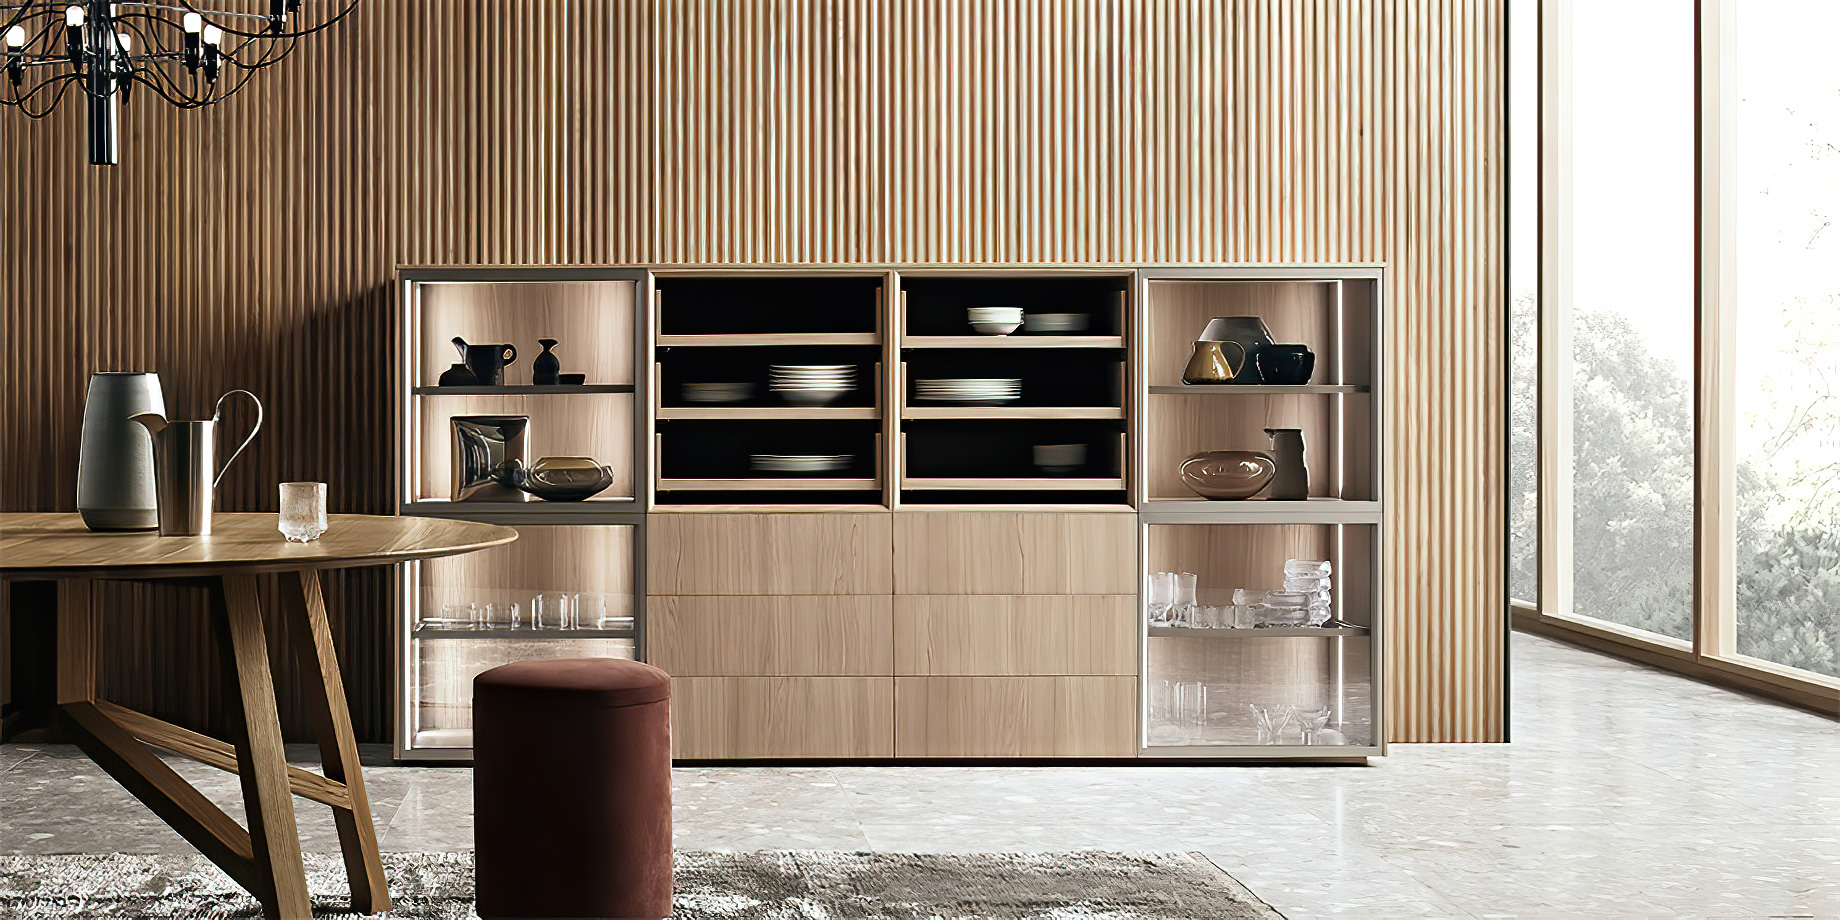 K-lab Contemporary Kitchen Ernestomeda Italy - Giuseppe Bavuso - K-lab Vetrina Slide Cabinet